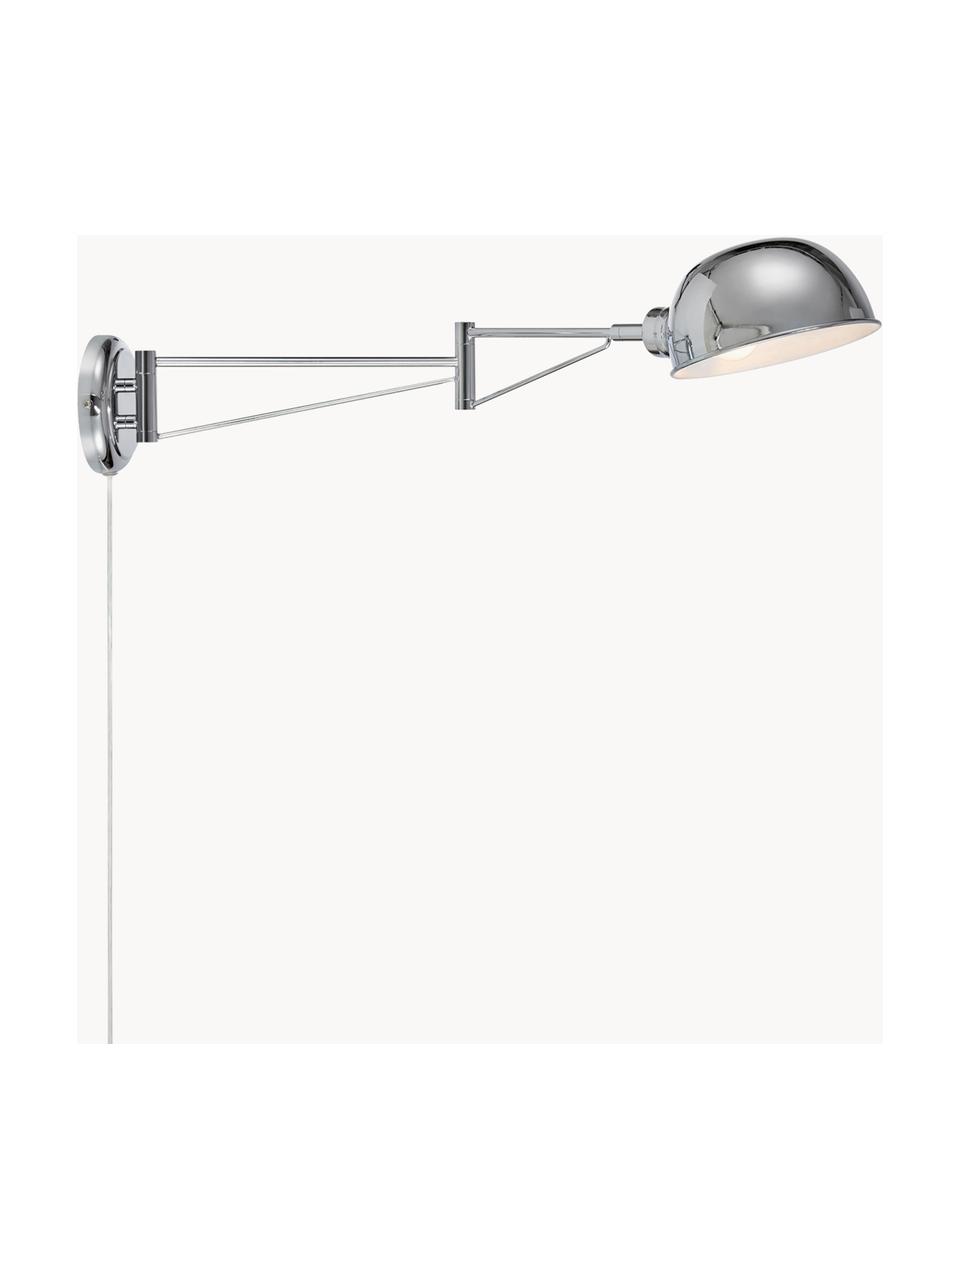 Grote wandspot Portland met stekker, Lamp: gecoat staal, Zilverkleurig, D 76 x H 16 cm